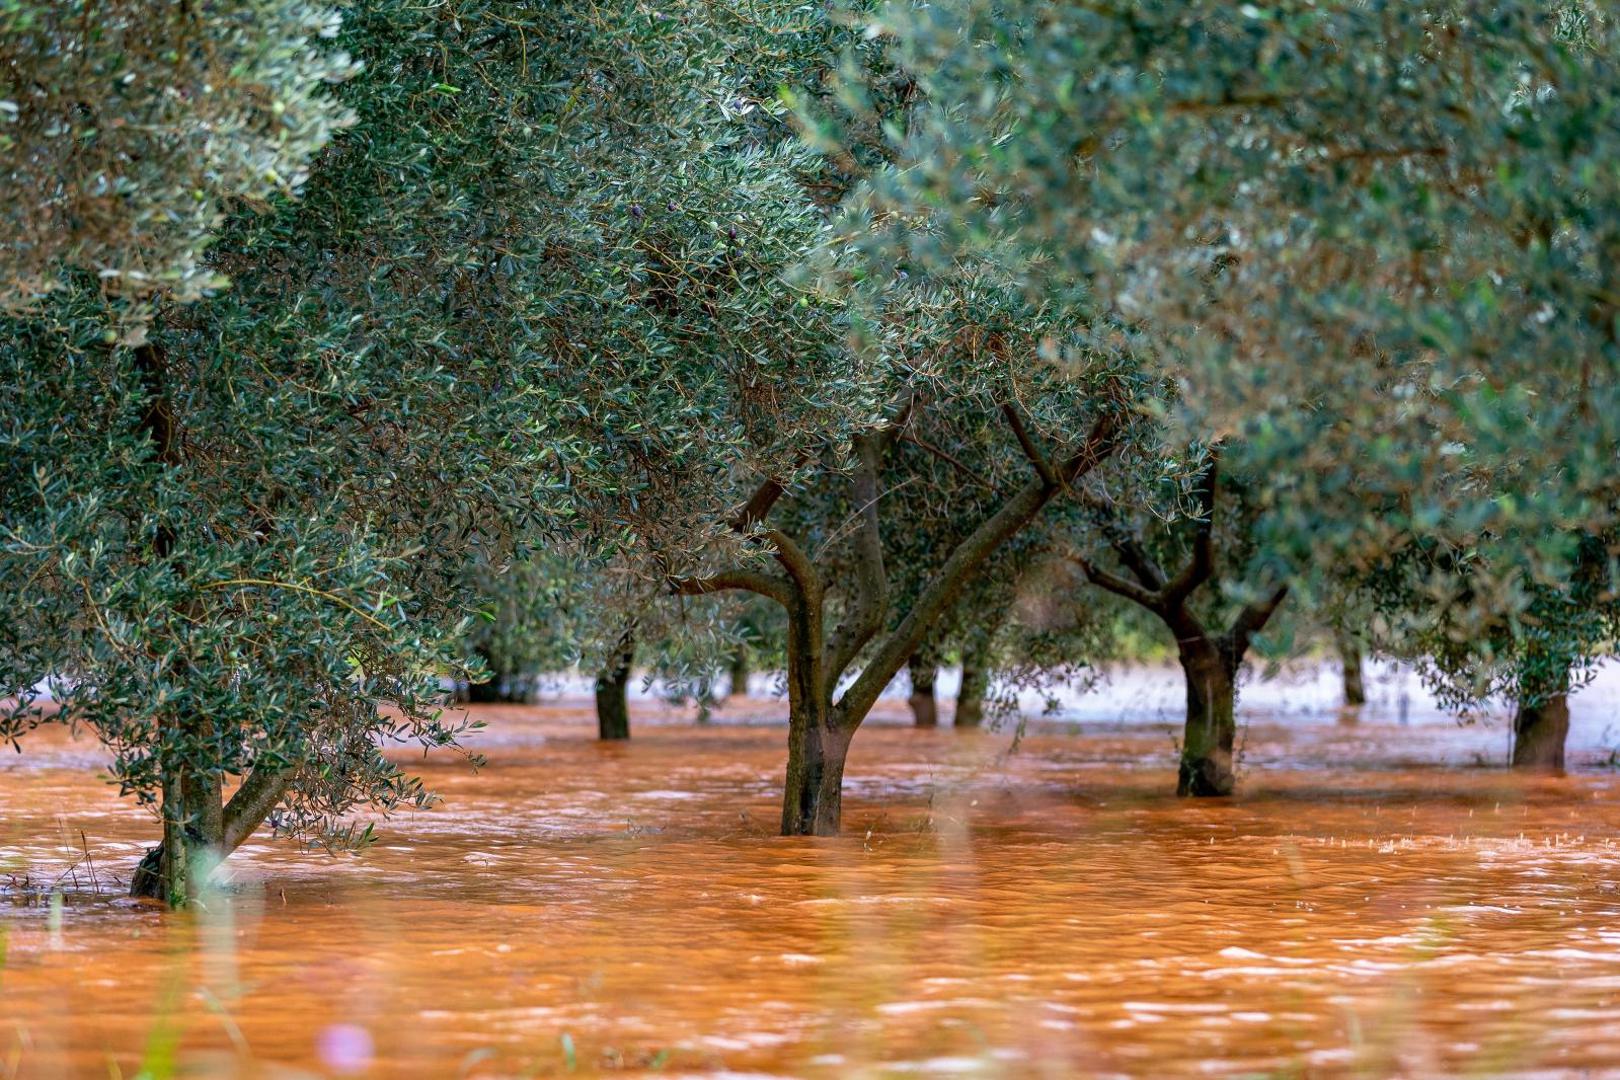 11.10.2020., Kokuletovica - Velike kolicine kise stvorile su mjestimicne probleme u prometu i poplavile su neke maslinike te vinograde.
Photo: Srecko Niketic/PIXSELL